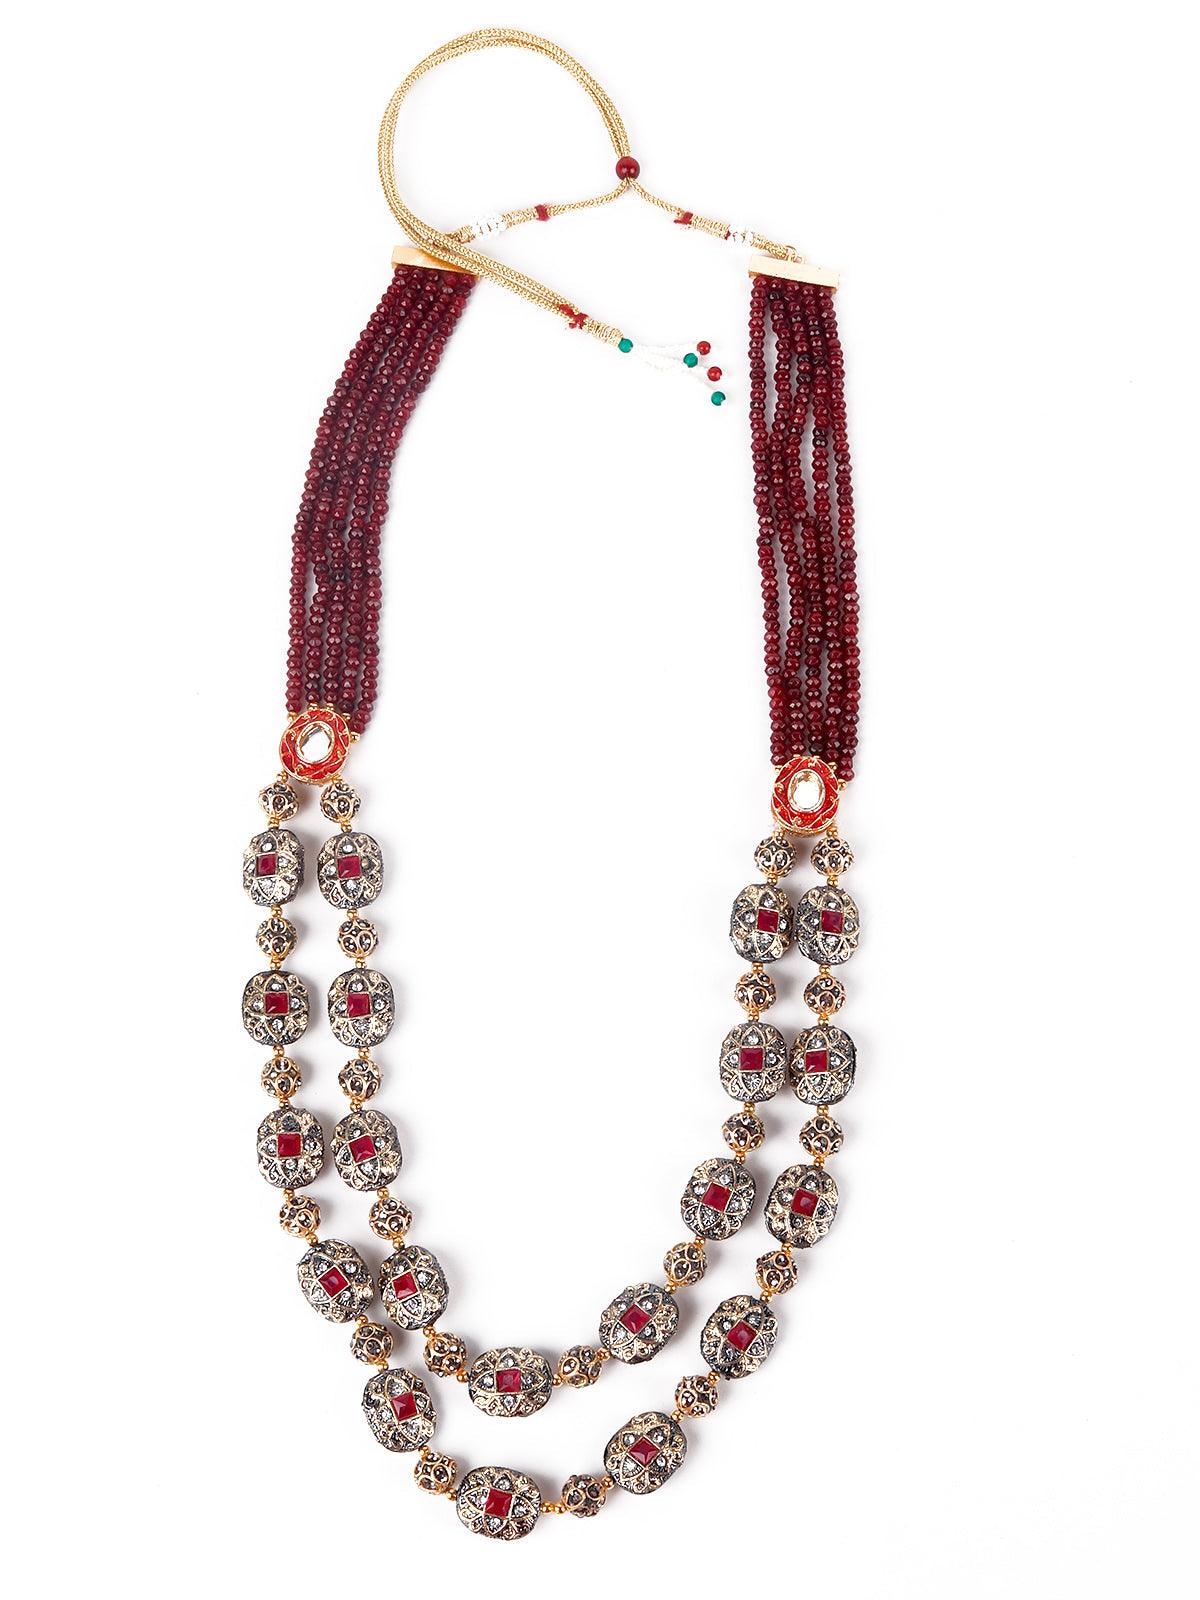 Gorgeous maroon embellished elegant necklace - Odette